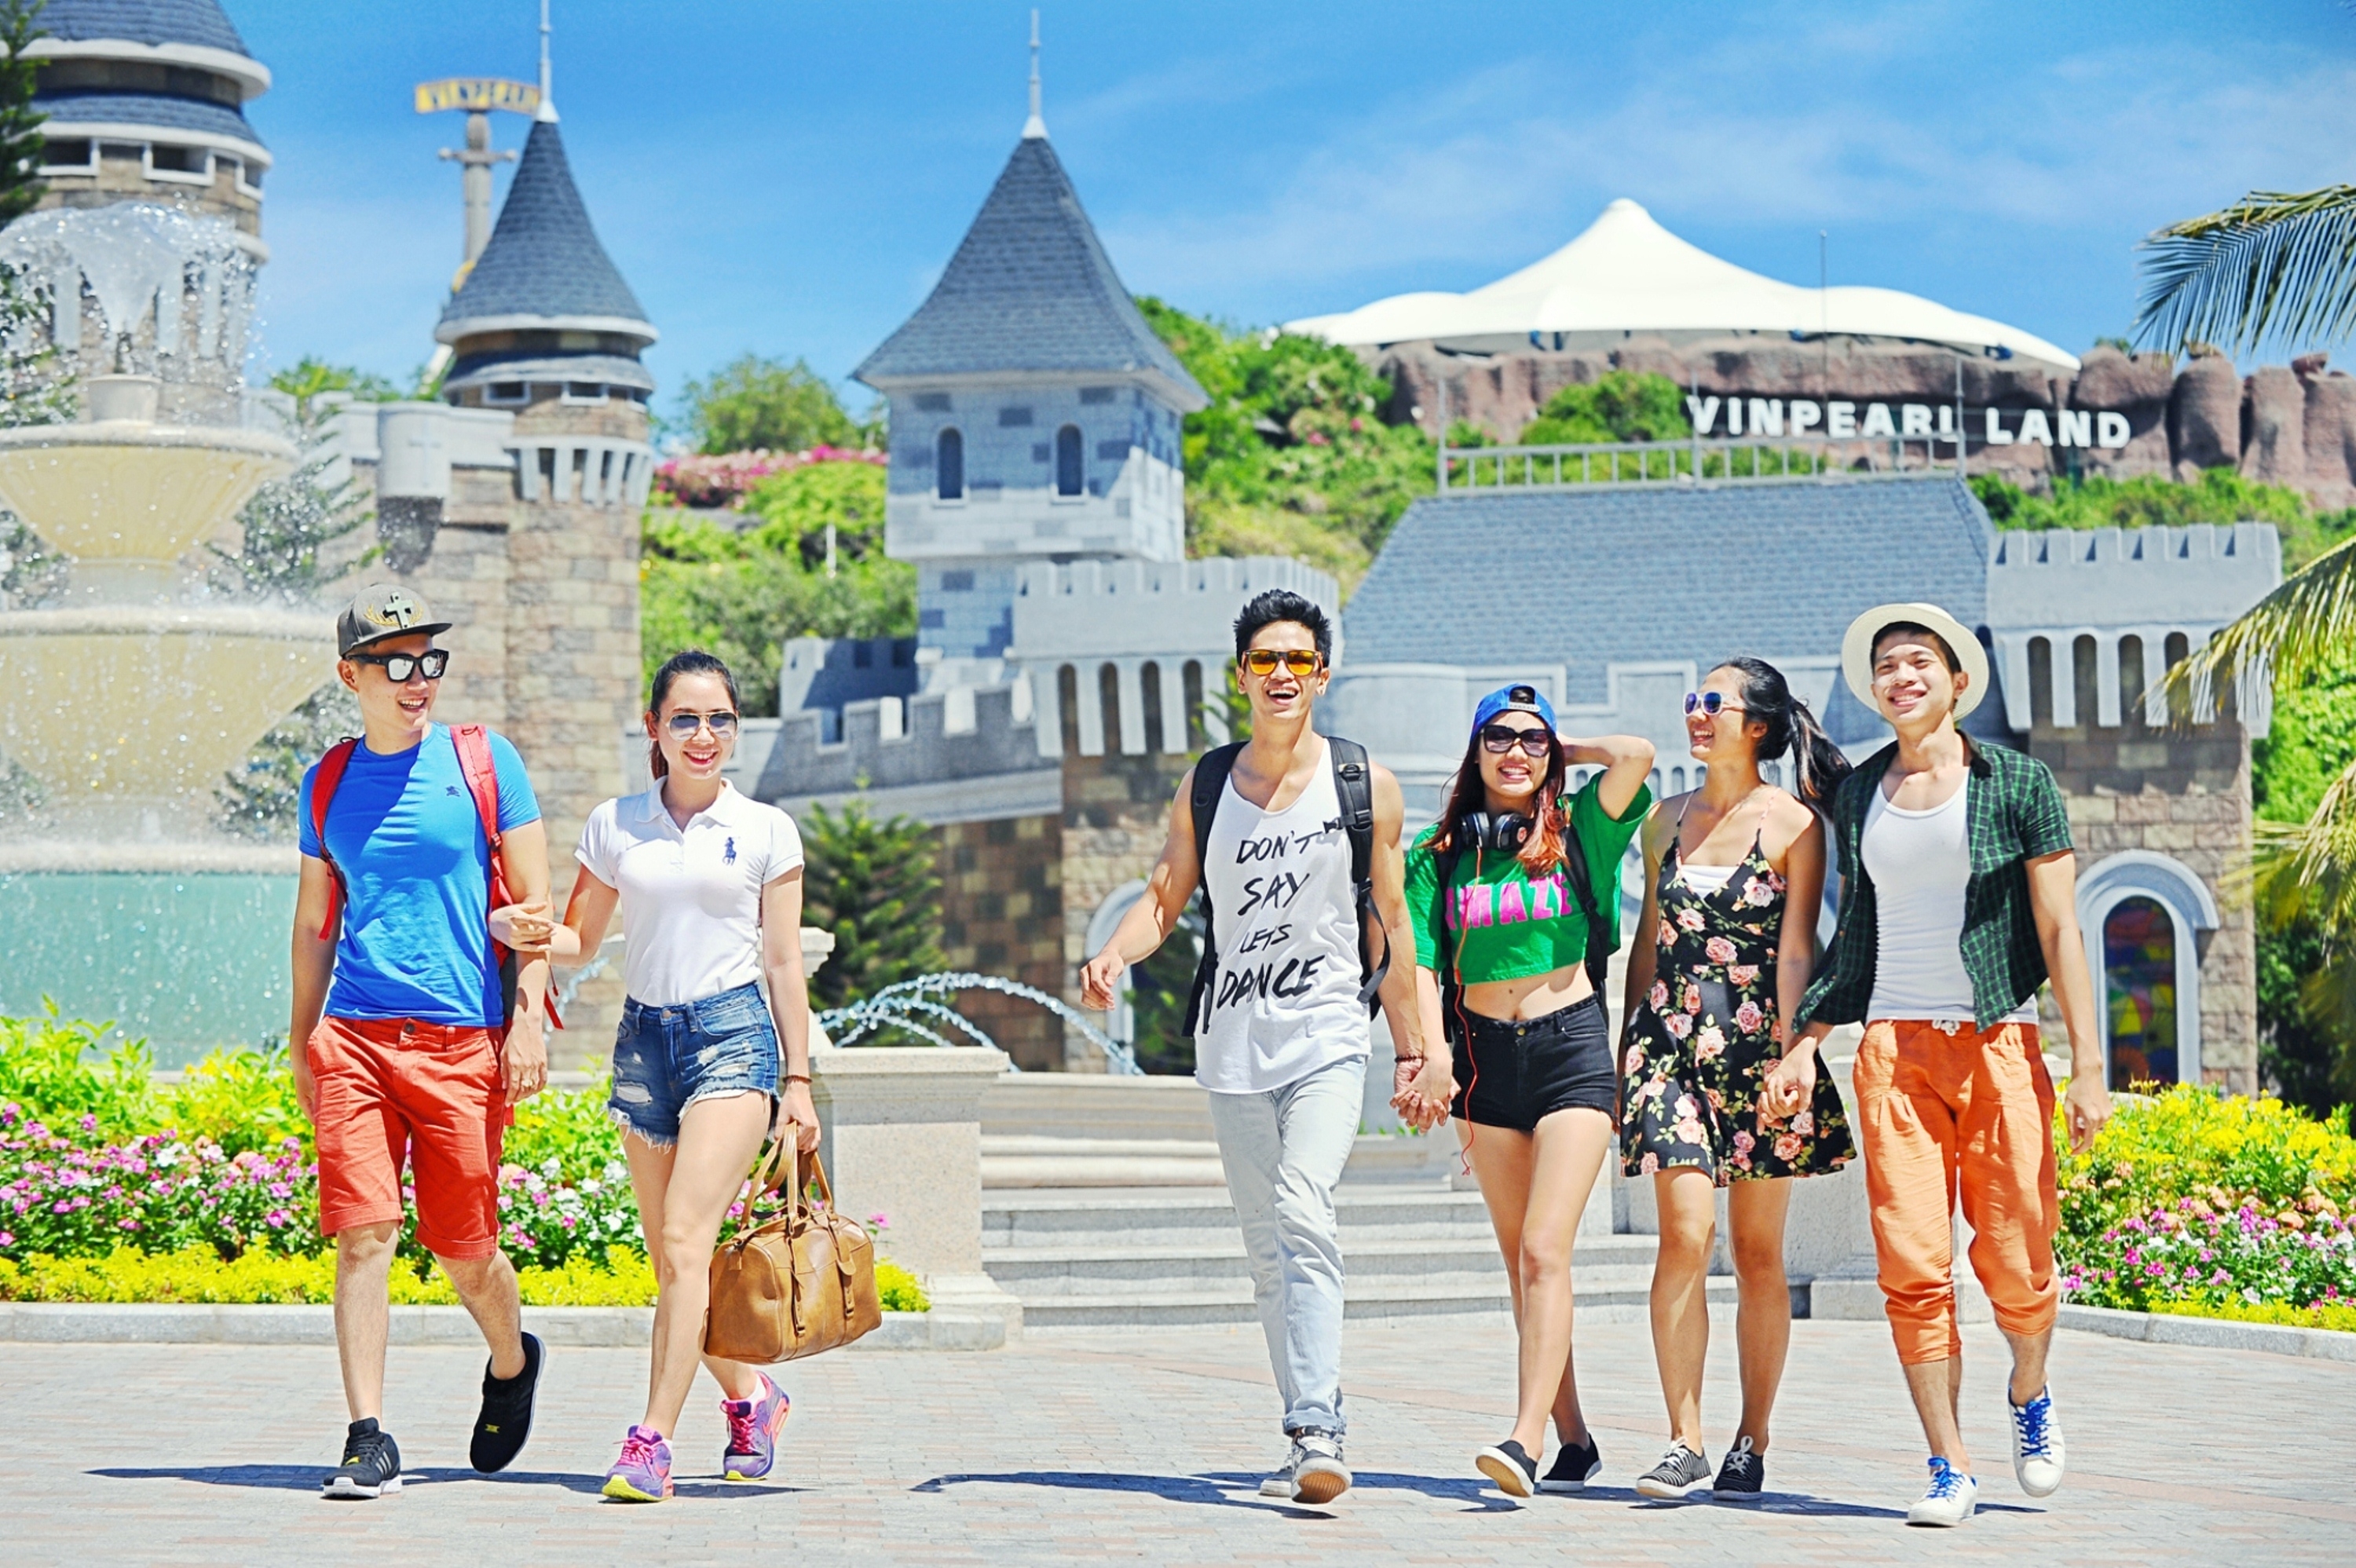 Du lịch Tết Kỷ Hợi - Tour Nha Trang - Đảo Bình Ba 4 ngày